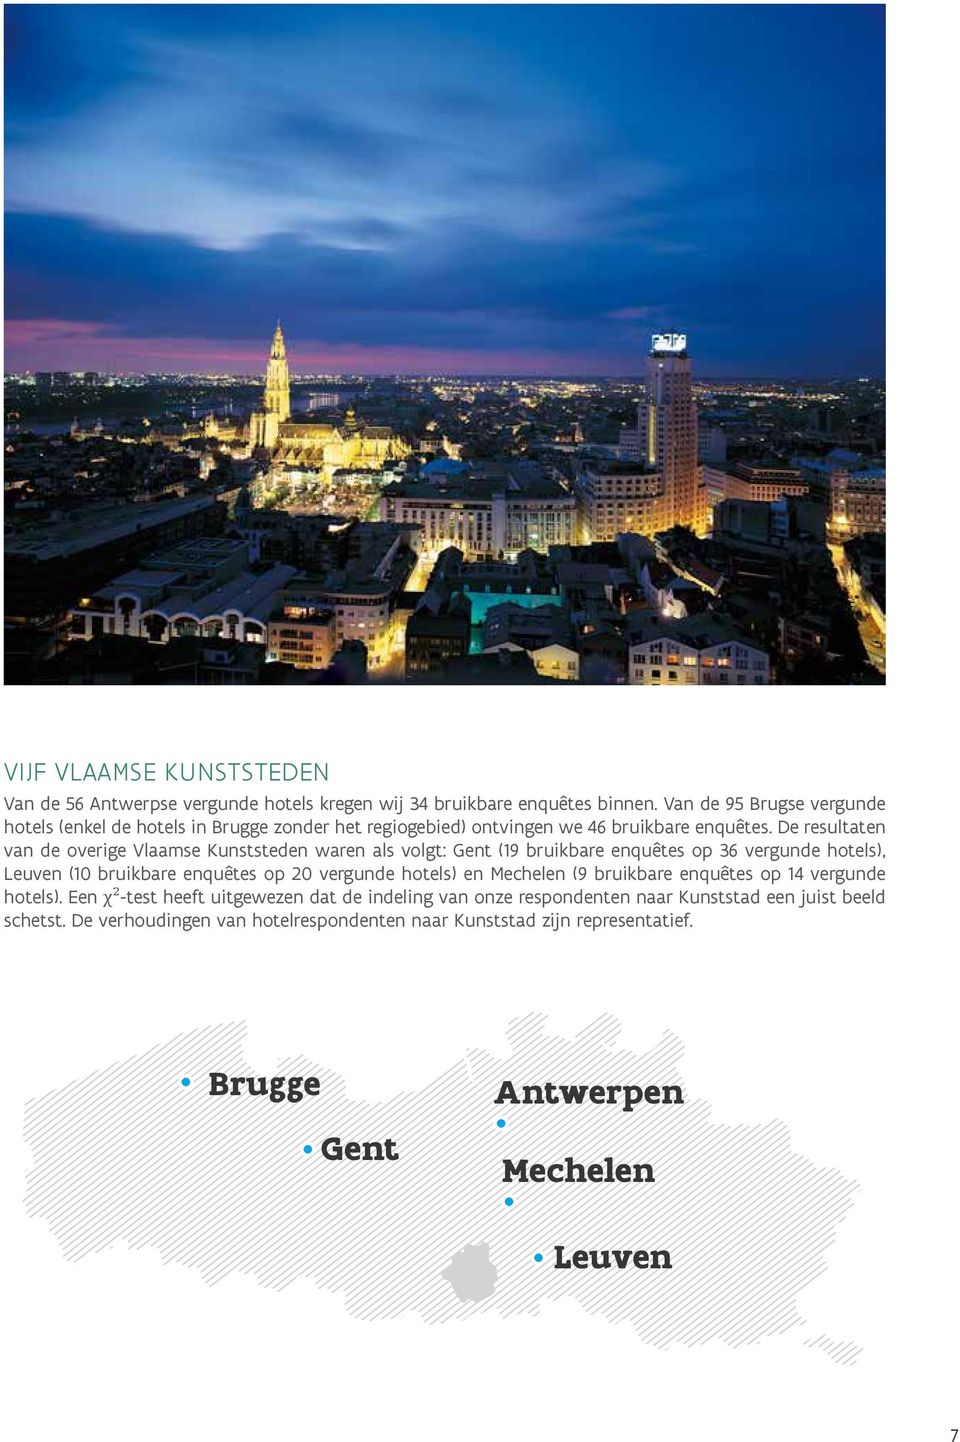 De resultaten van de overige Vlaamse Kunststeden waren als volgt: Gent (19 bruikbare enquêtes op 36 vergunde hotels), Leuven (10 bruikbare enquêtes op 20 vergunde